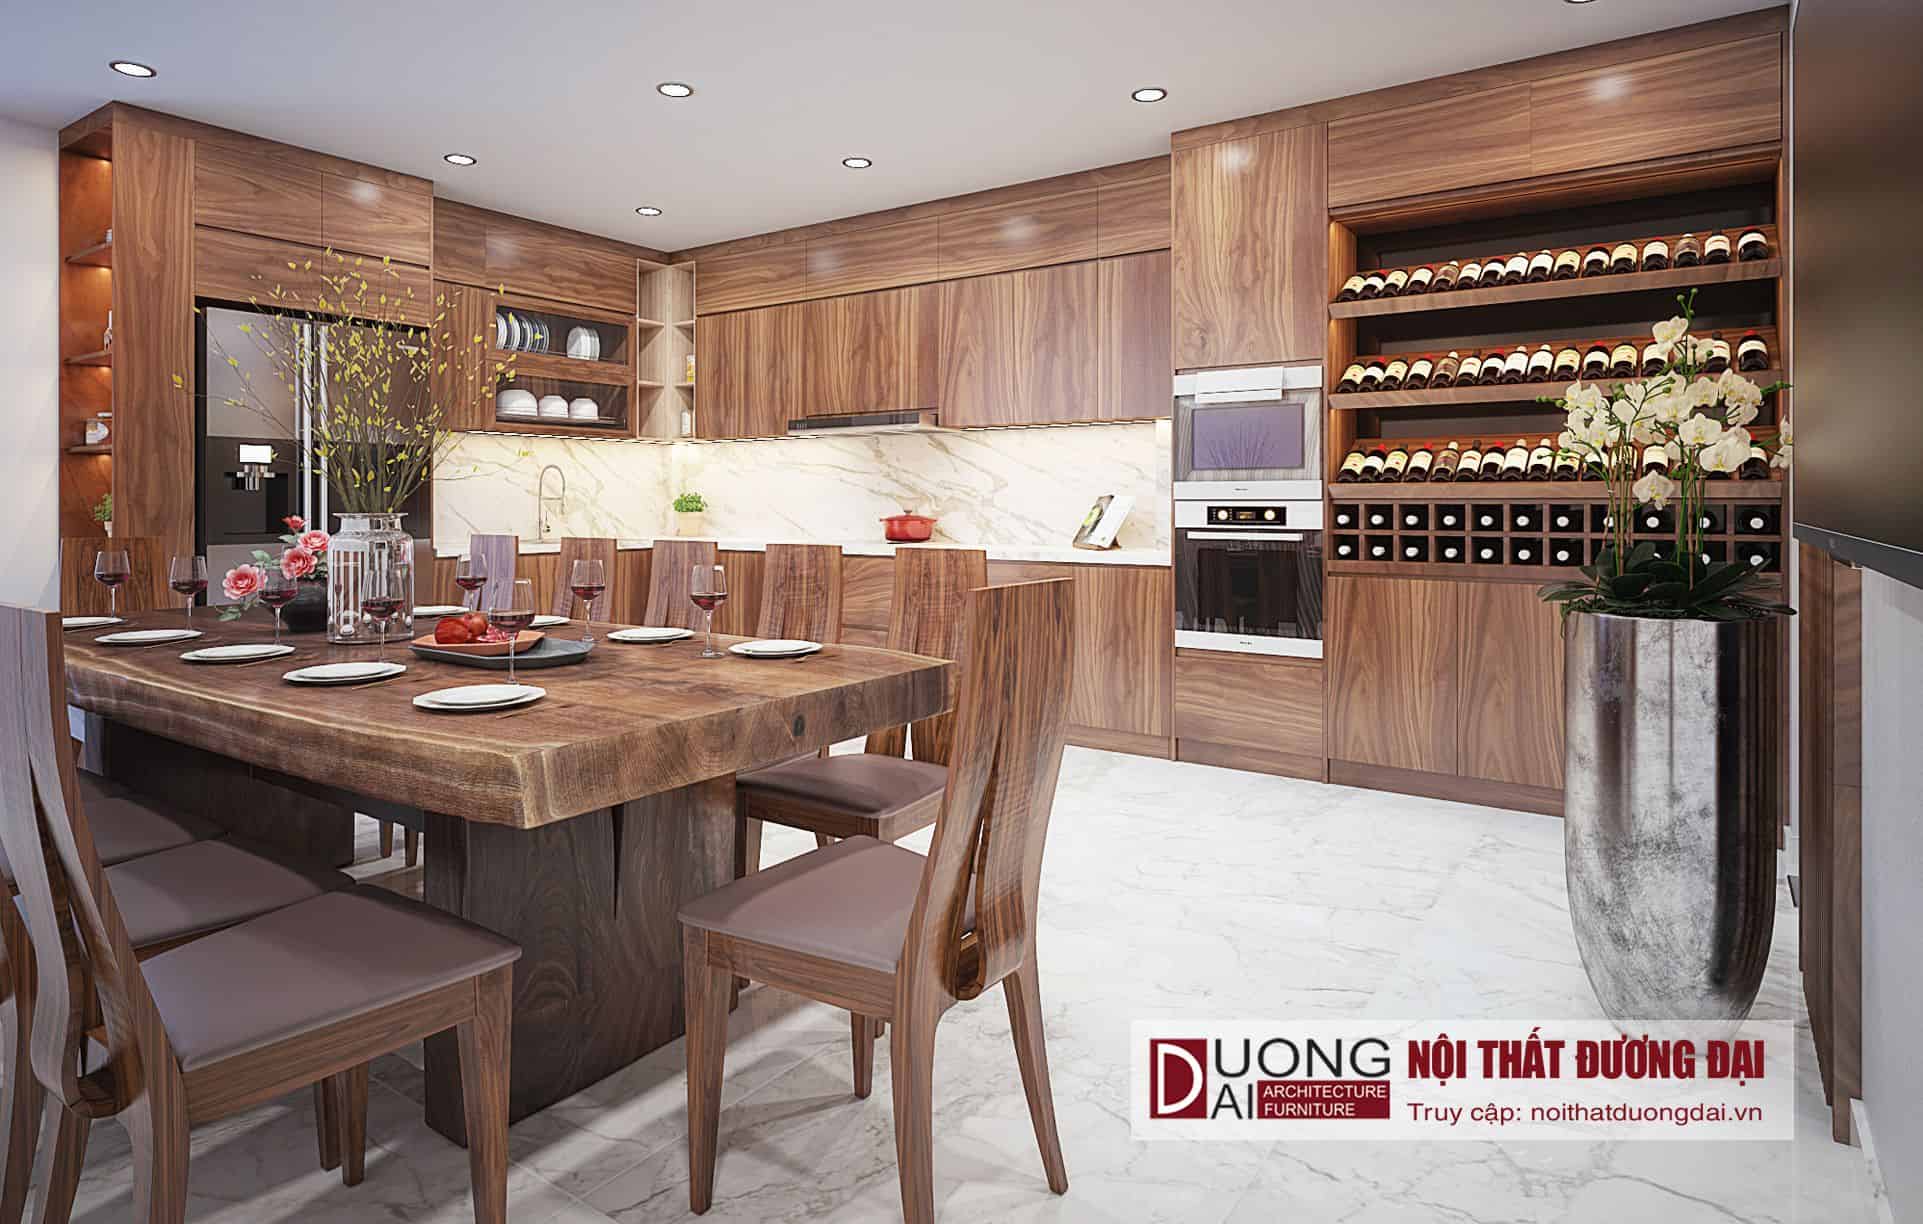 Thiết kế phòng bếp hiện đại làm từ gỗ công nghiệp phủ lớp vân gỗ